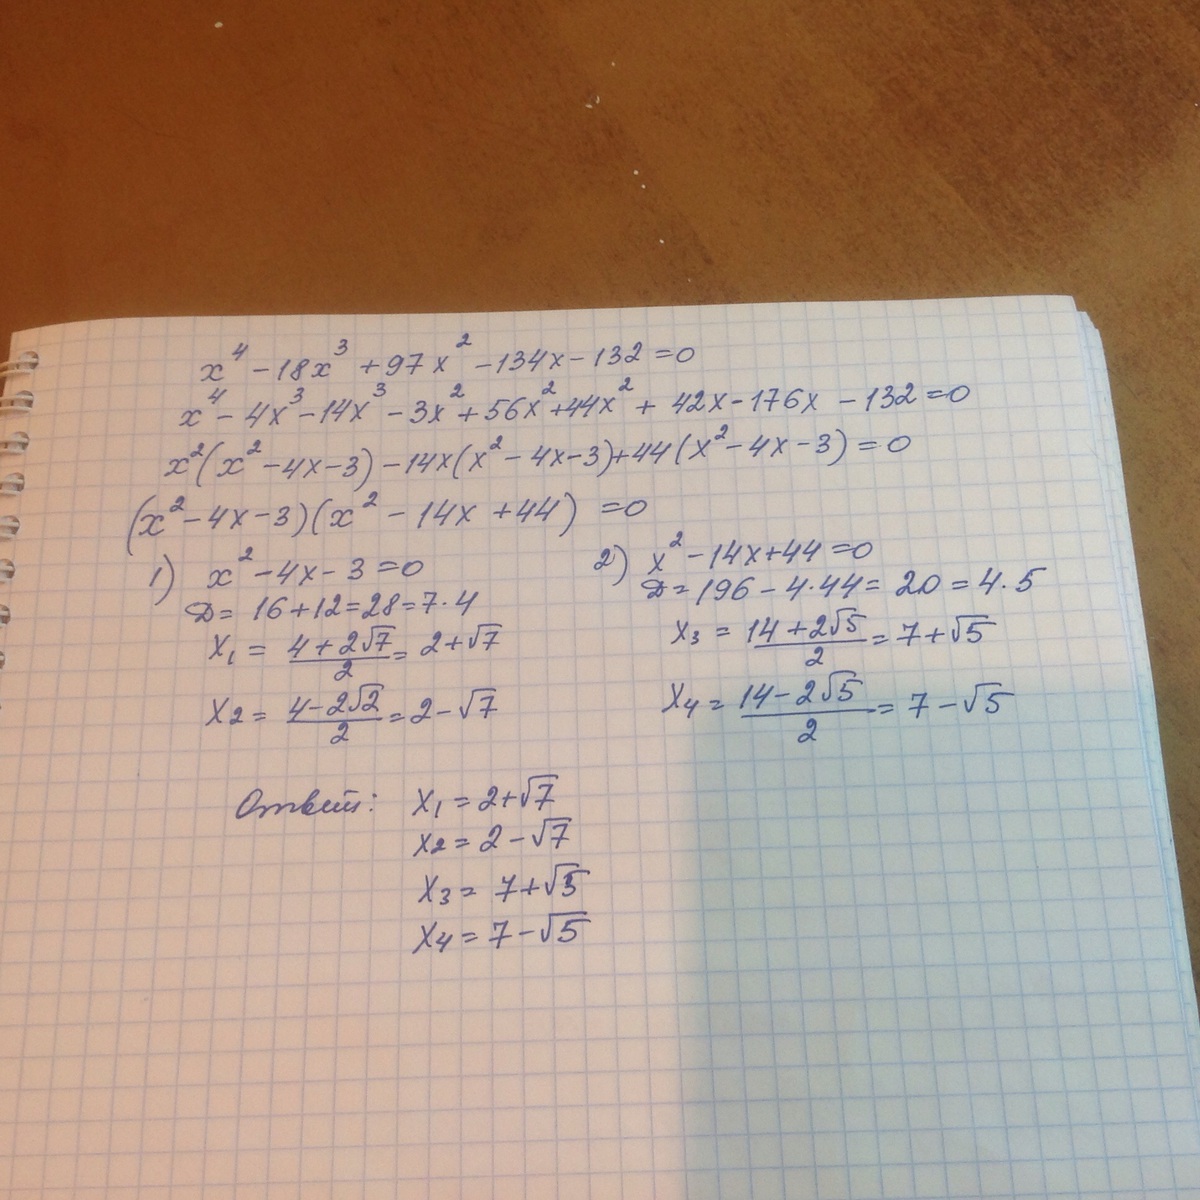 5 ч 55 мин 55 мин. 540:На икс380:19. 324-(X+52)=223. Реши уравнения. Х – 5700 = 1300. X5 23.